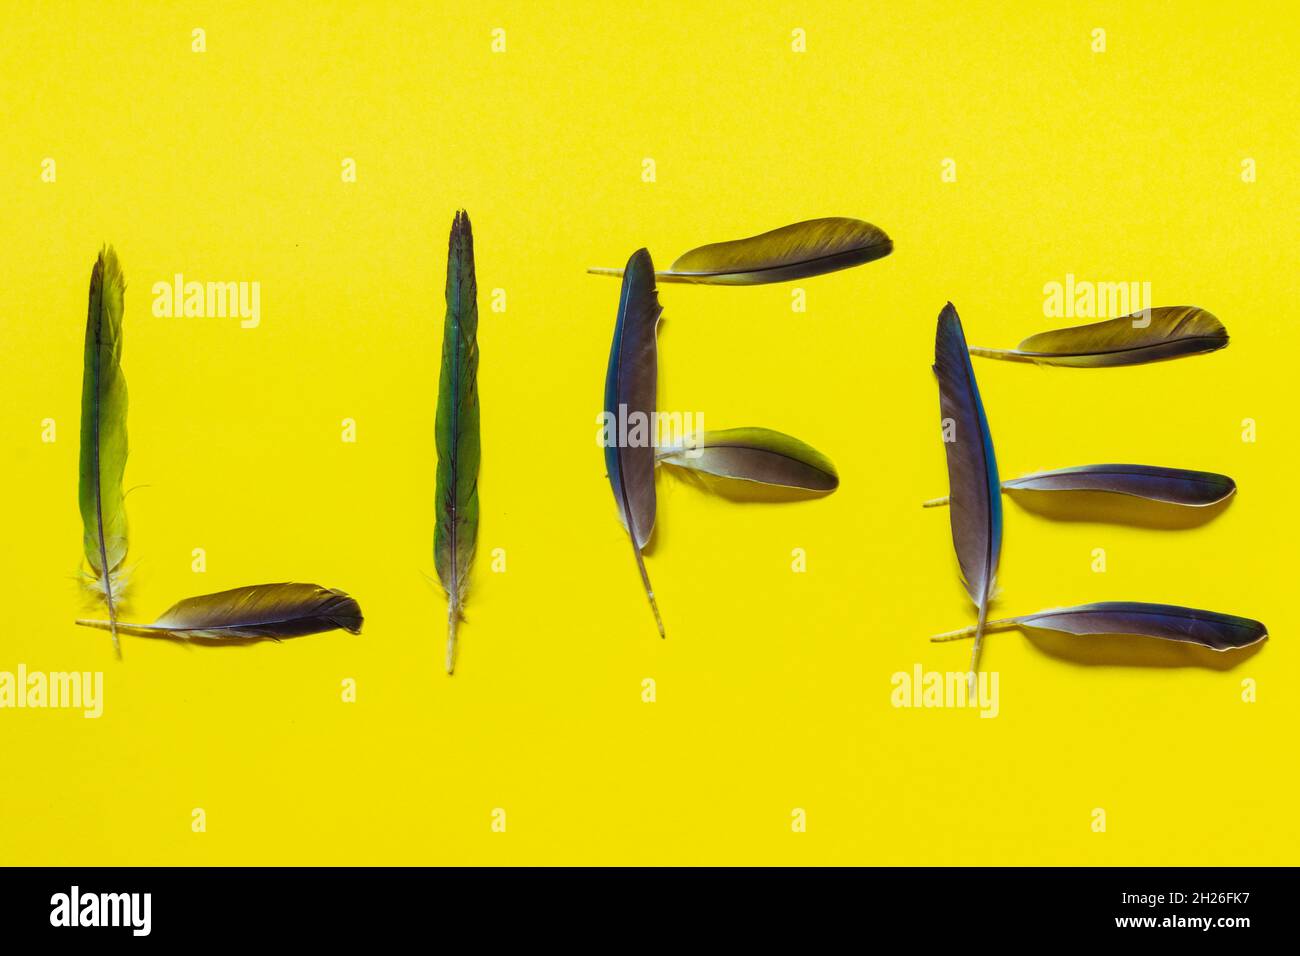 Das Wort Leben aus Vogelfedern liegt auf einem hellgelben Hintergrund. Stockfoto